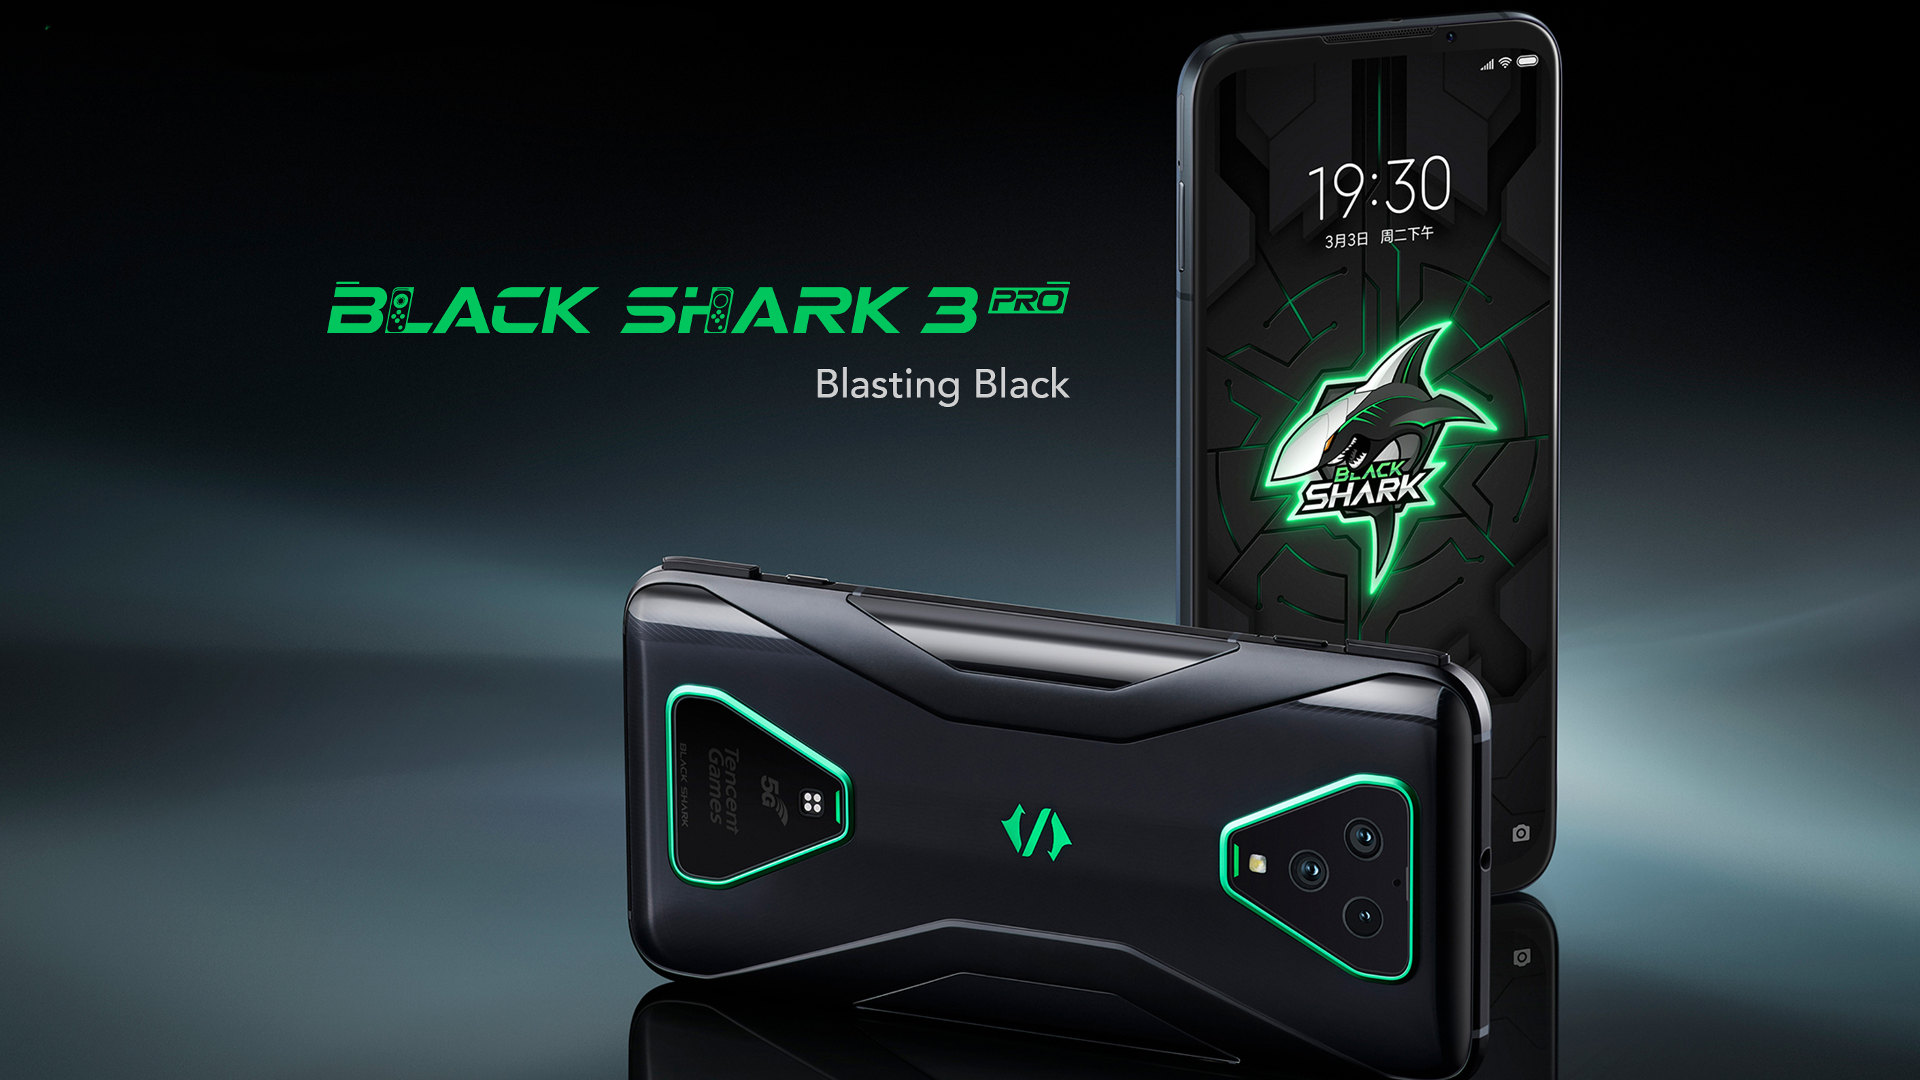 Black shark gt3 часы. Смартфон Xiaomi Black Shark 3. Игровой смартфон Xiaomi Black Shark 3. Xiaomi Black Shark 3 Pro. Смартфон Блэк Шарк.